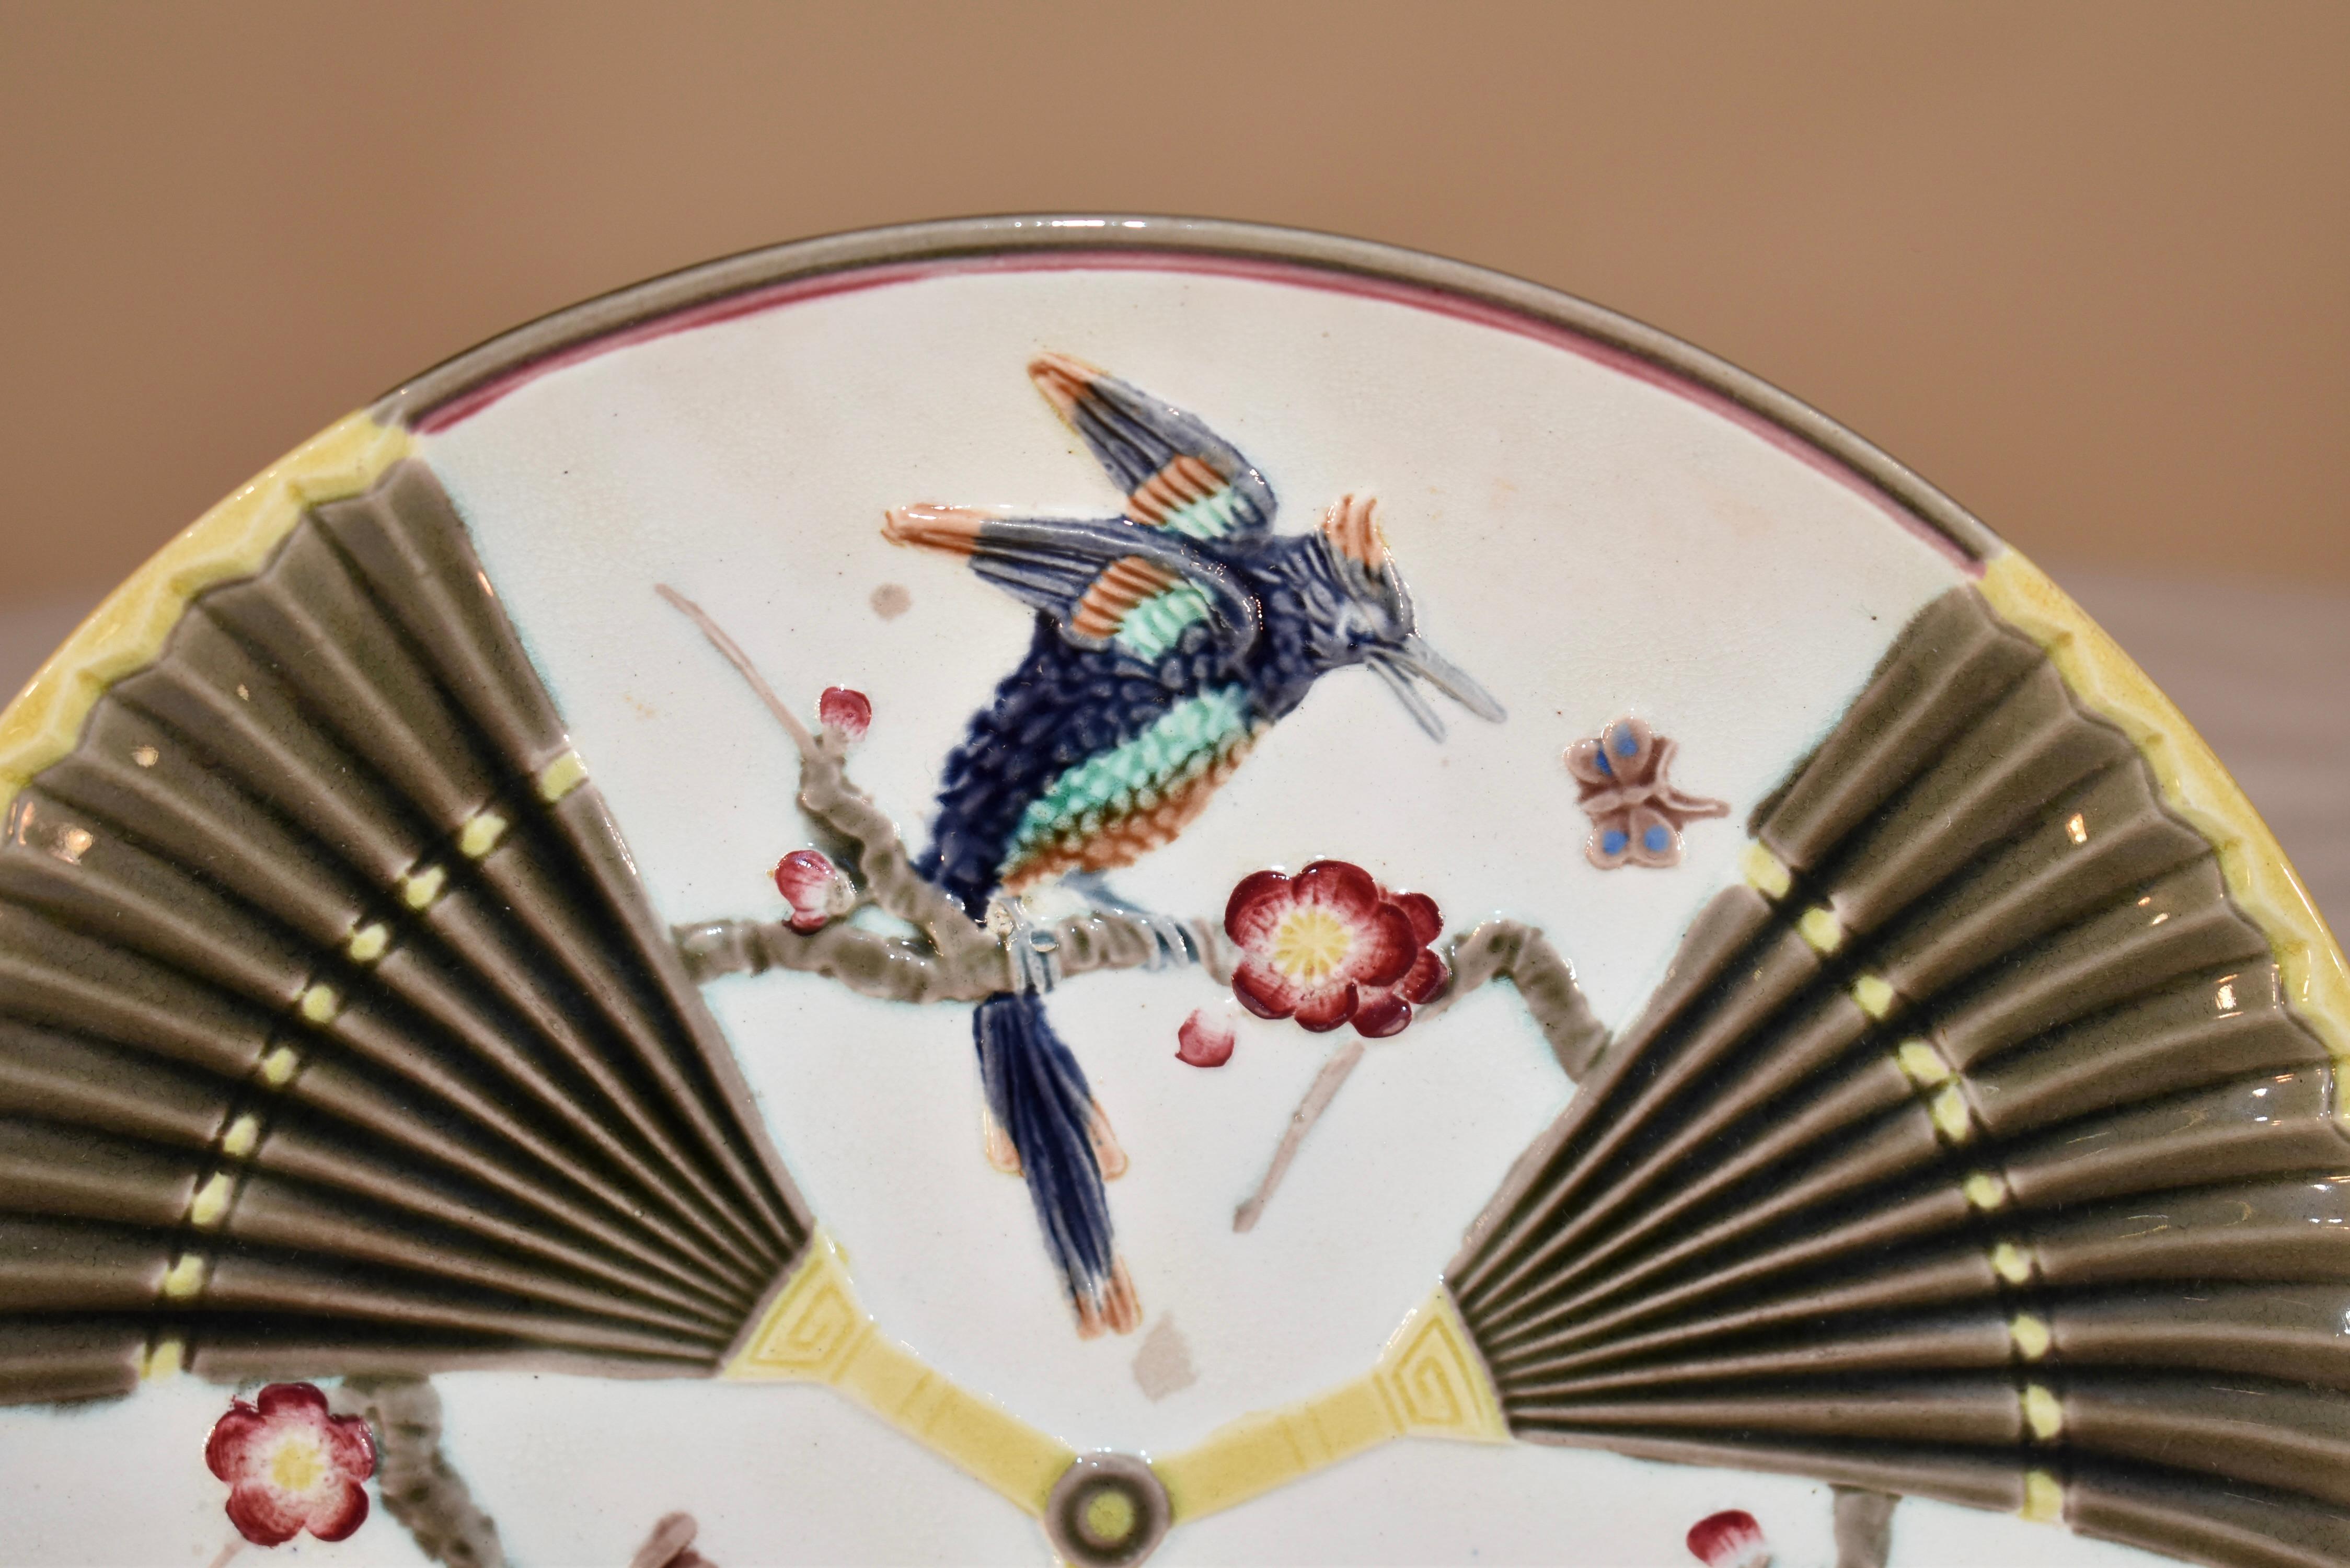 Teller mit Vogel- und Fächermuster aus Majolika aus dem 19. Jahrhundert in England. Auf der Rückseite des Tellers befindet sich eine eingeprägte WEDGWOOD-Marke. Die Farben sind leuchtend und schön. Auf der Rückseite befindet sich ebenfalls eine